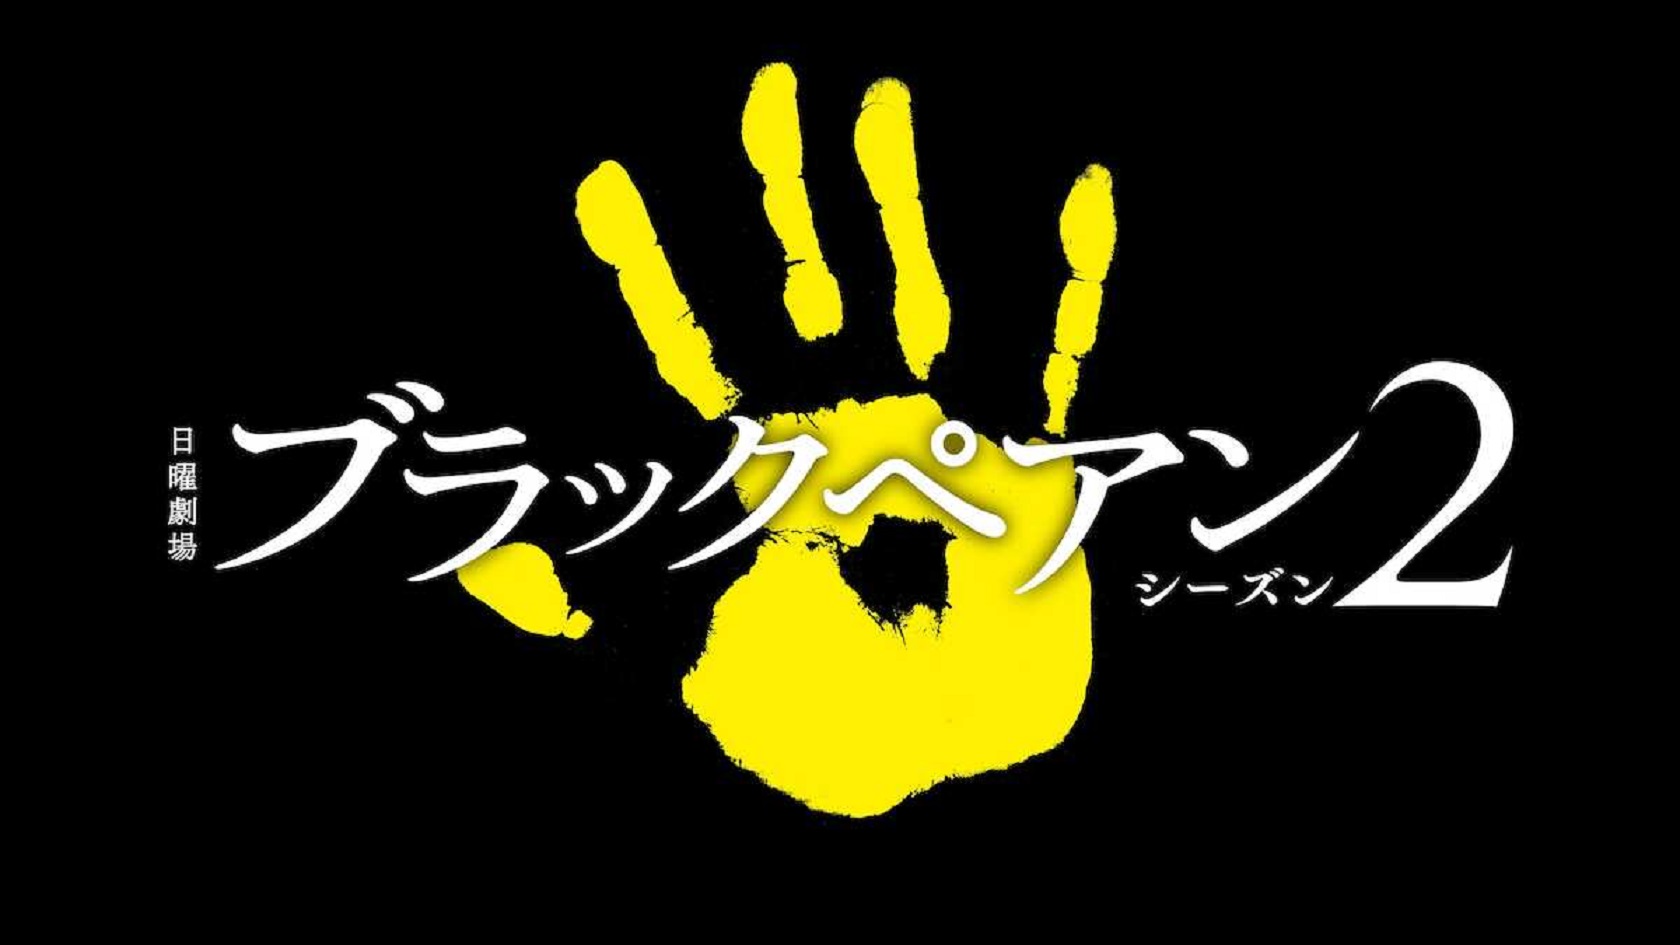 嵐・二宮和也「ブラックペアン」が帰ってくる!7月TBS日曜劇場